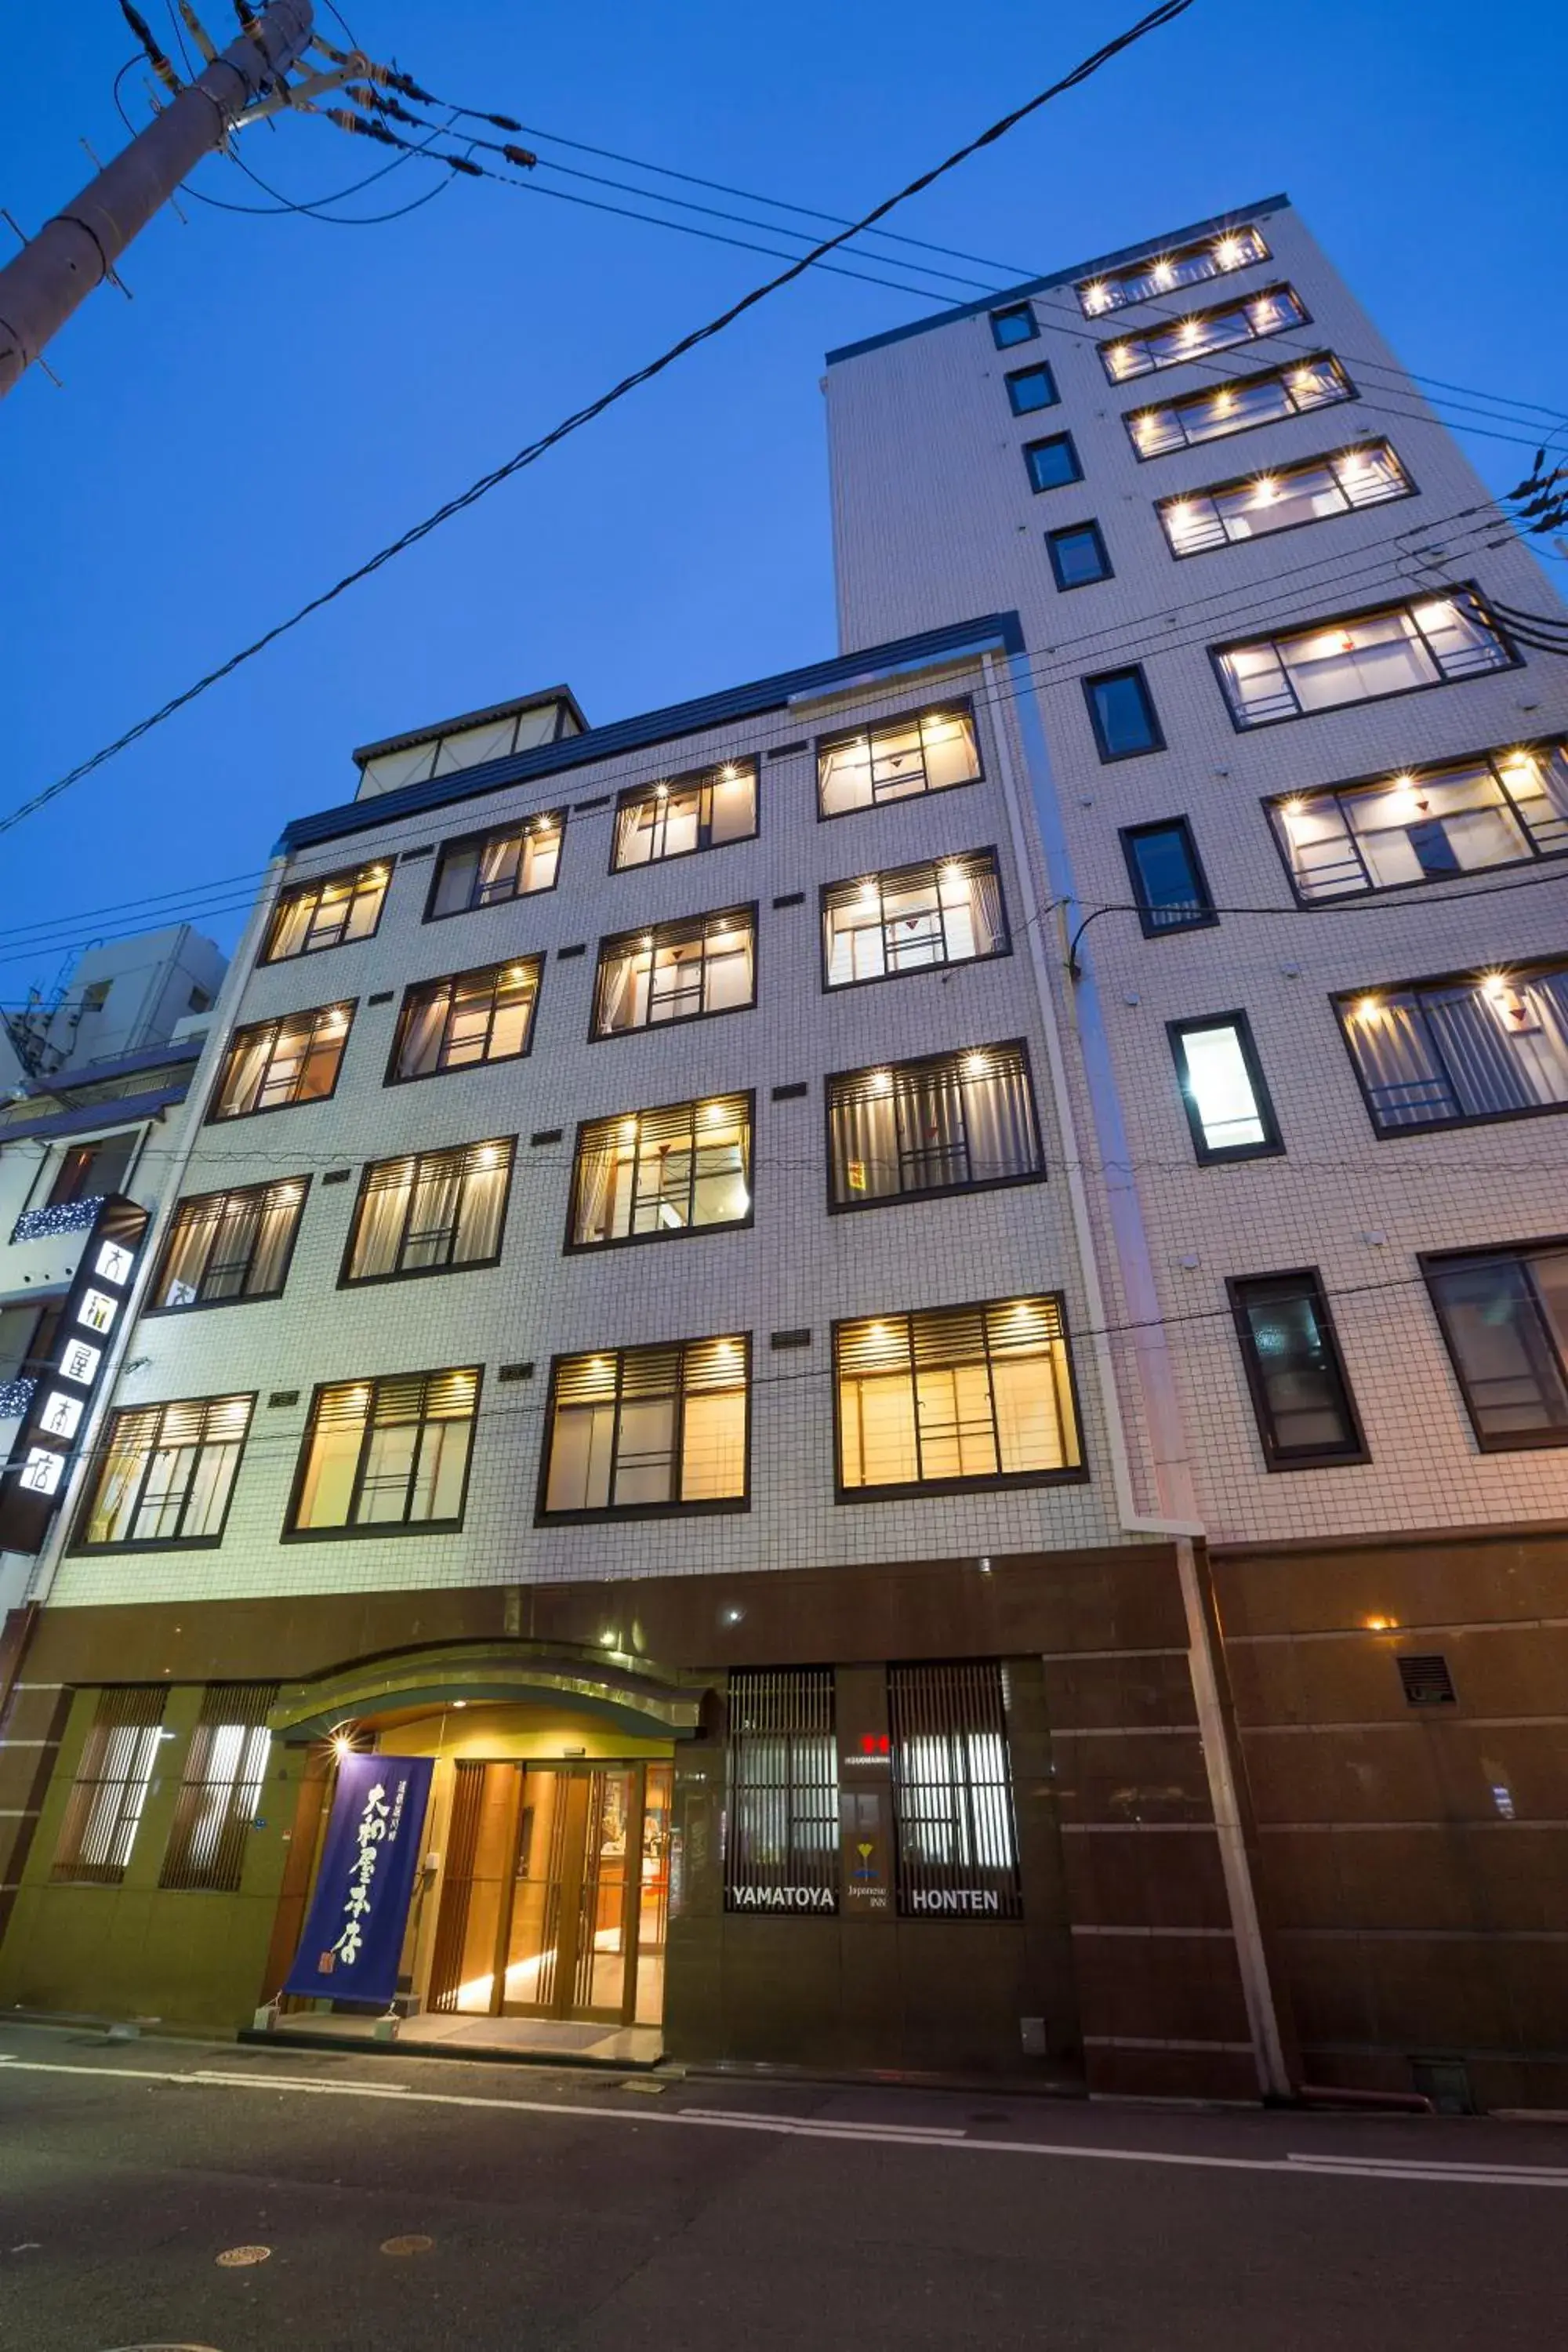 Property Building in Yamatoya Honten Ryokan Osaka Hotel